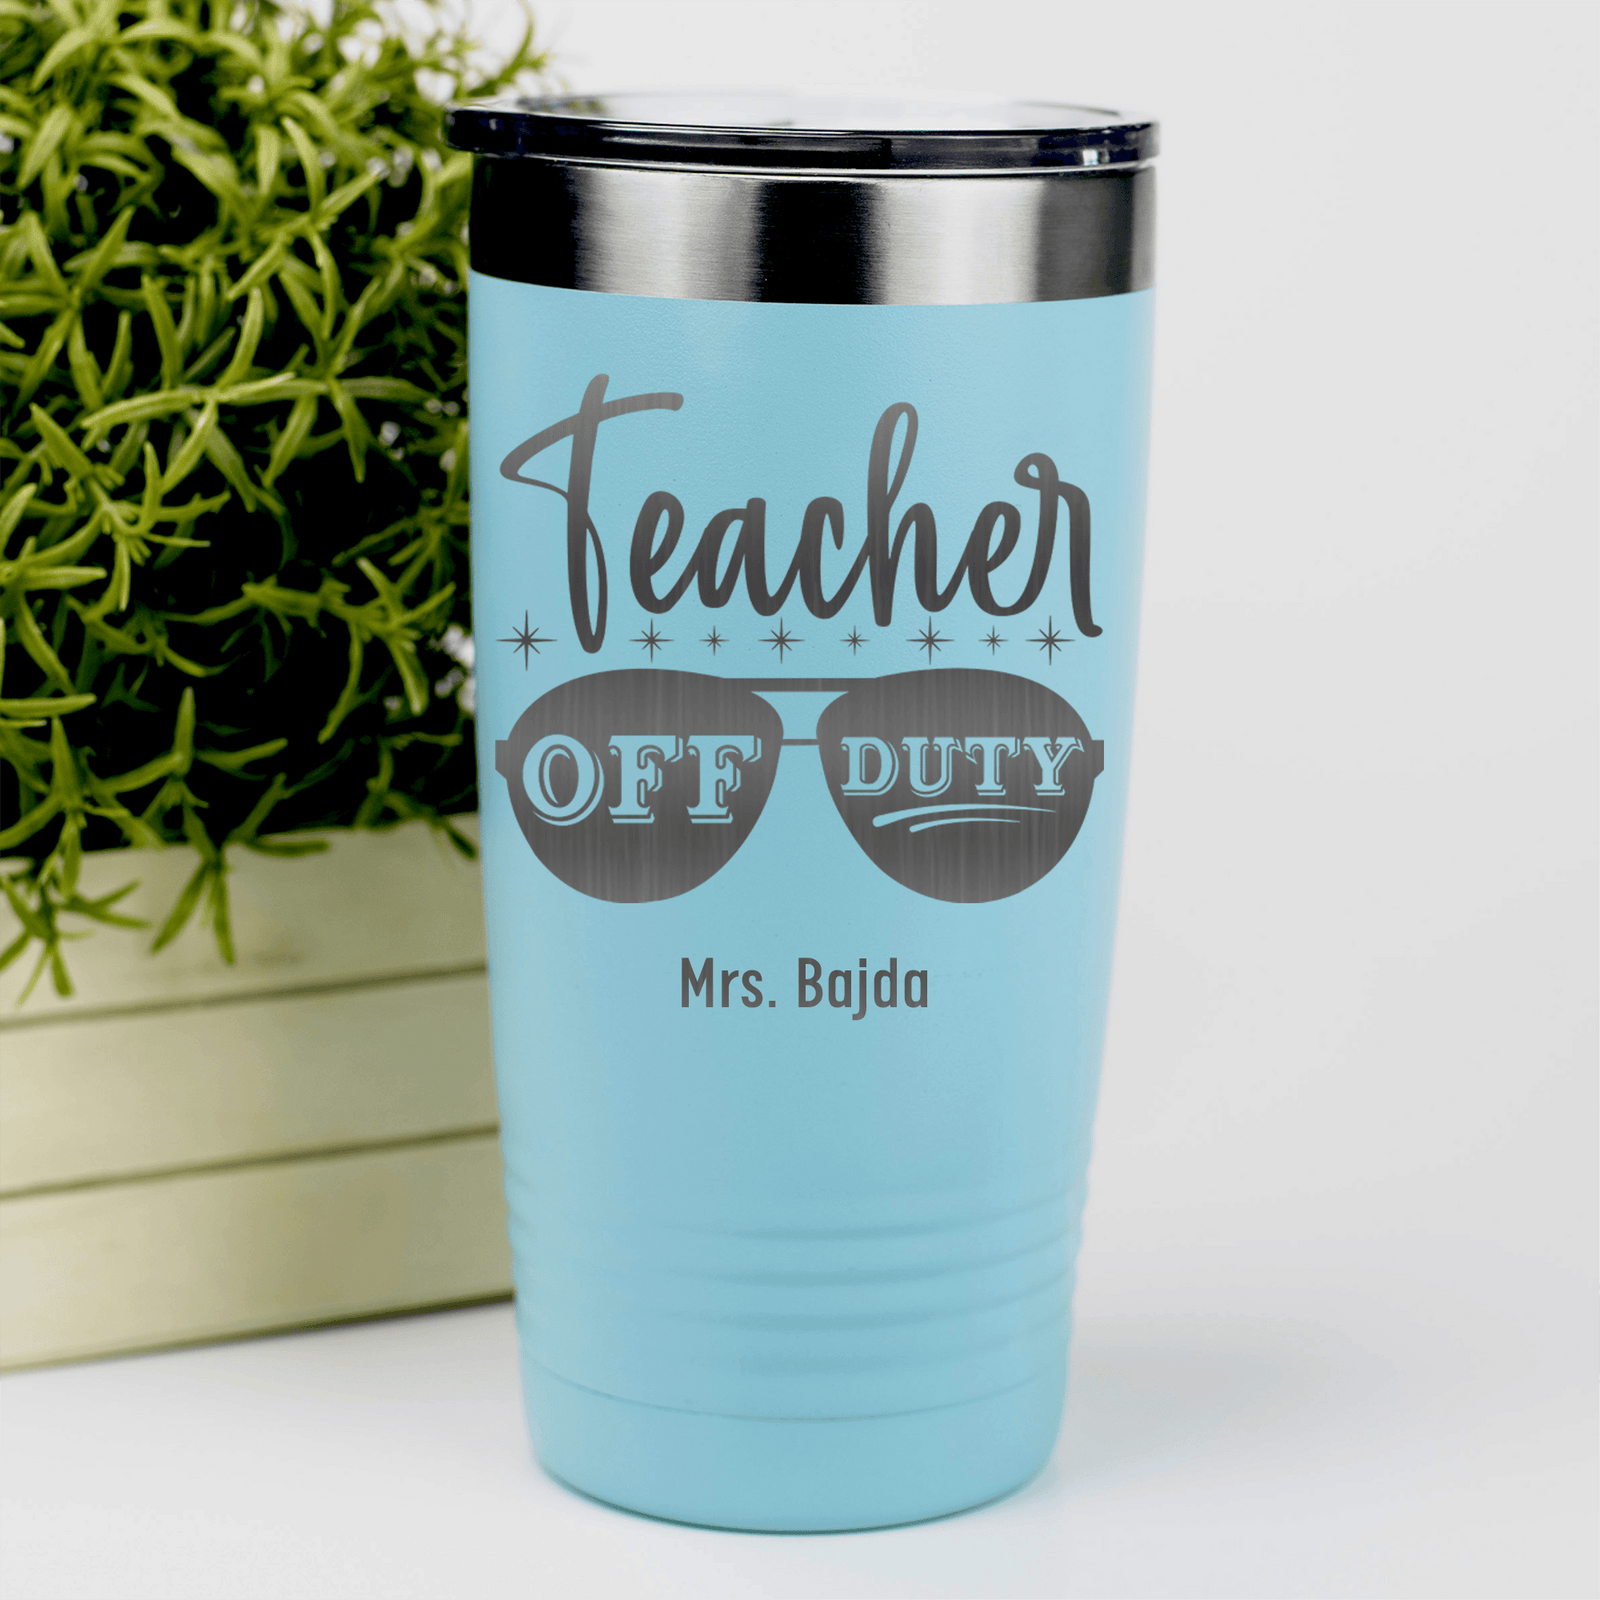 Teal Teacher Tumbler With Off Duty Teacher Design